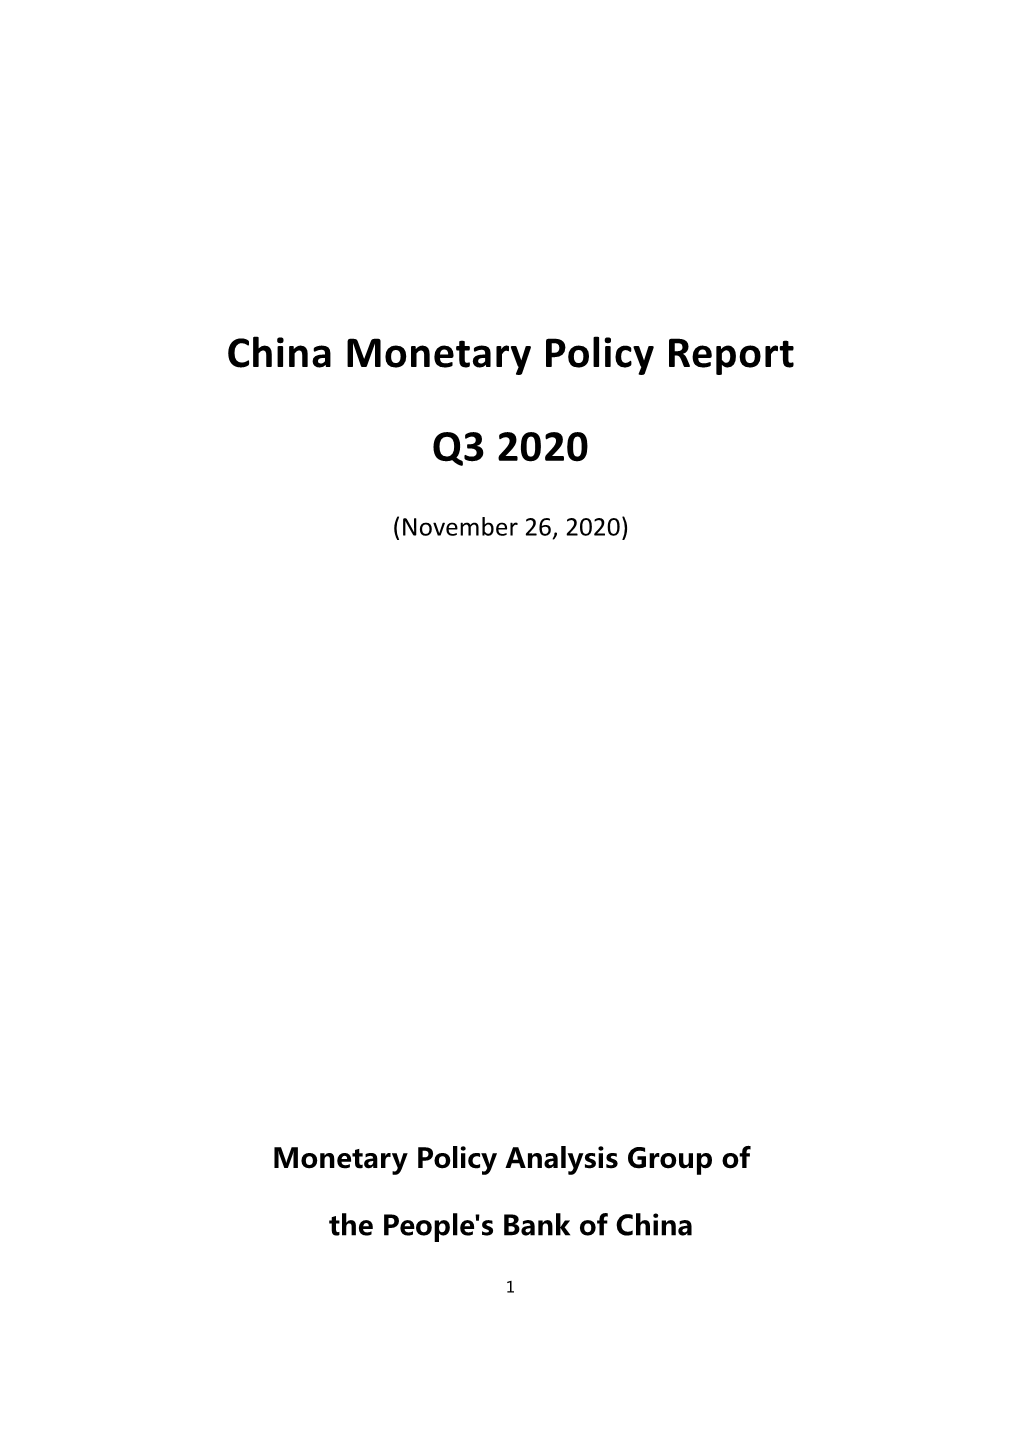 China Monetary Policy Report Q3 2020